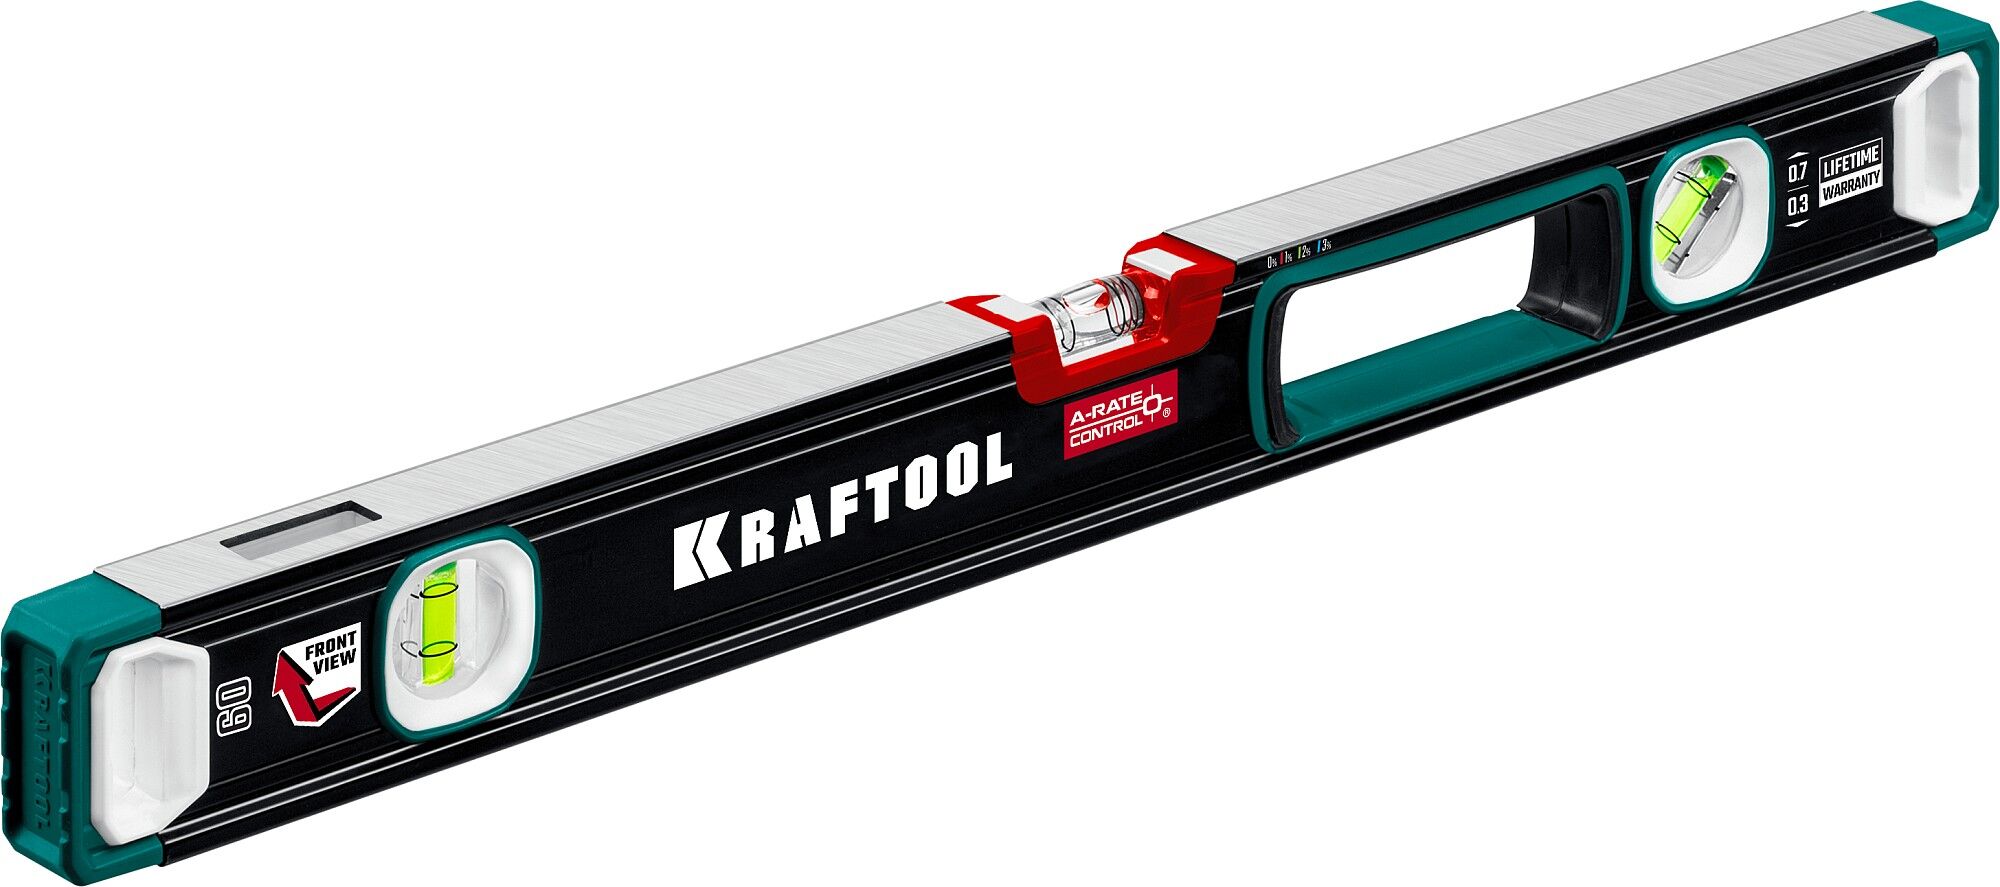 KRAFTOOL A-RATE CONTROL, 600 мм, точность 0.3 мм/м, с инновационным зеркальным глазком, сверхпрочный уровень (34986-60)